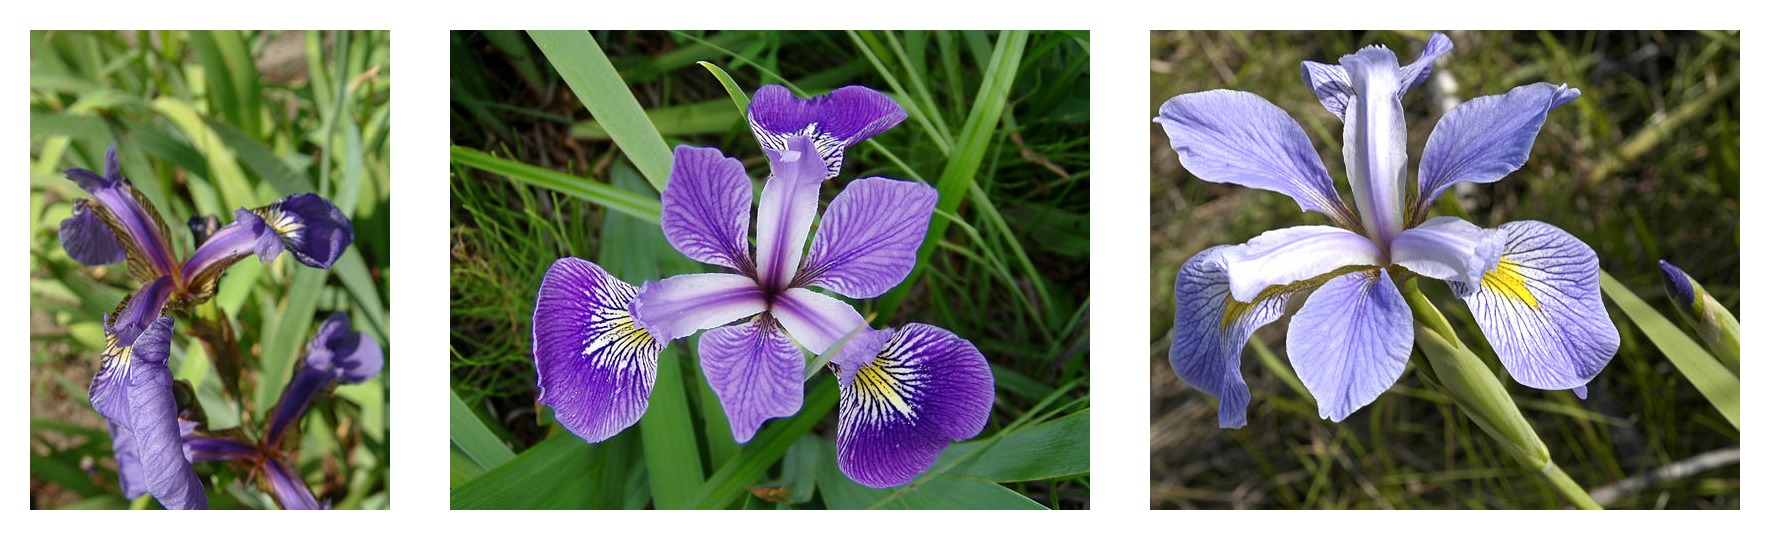 Hình dạng cánh hoa được so sánh cho ba loài diên vĩ: Iris setosa, Iris virginica và Iris versicolor